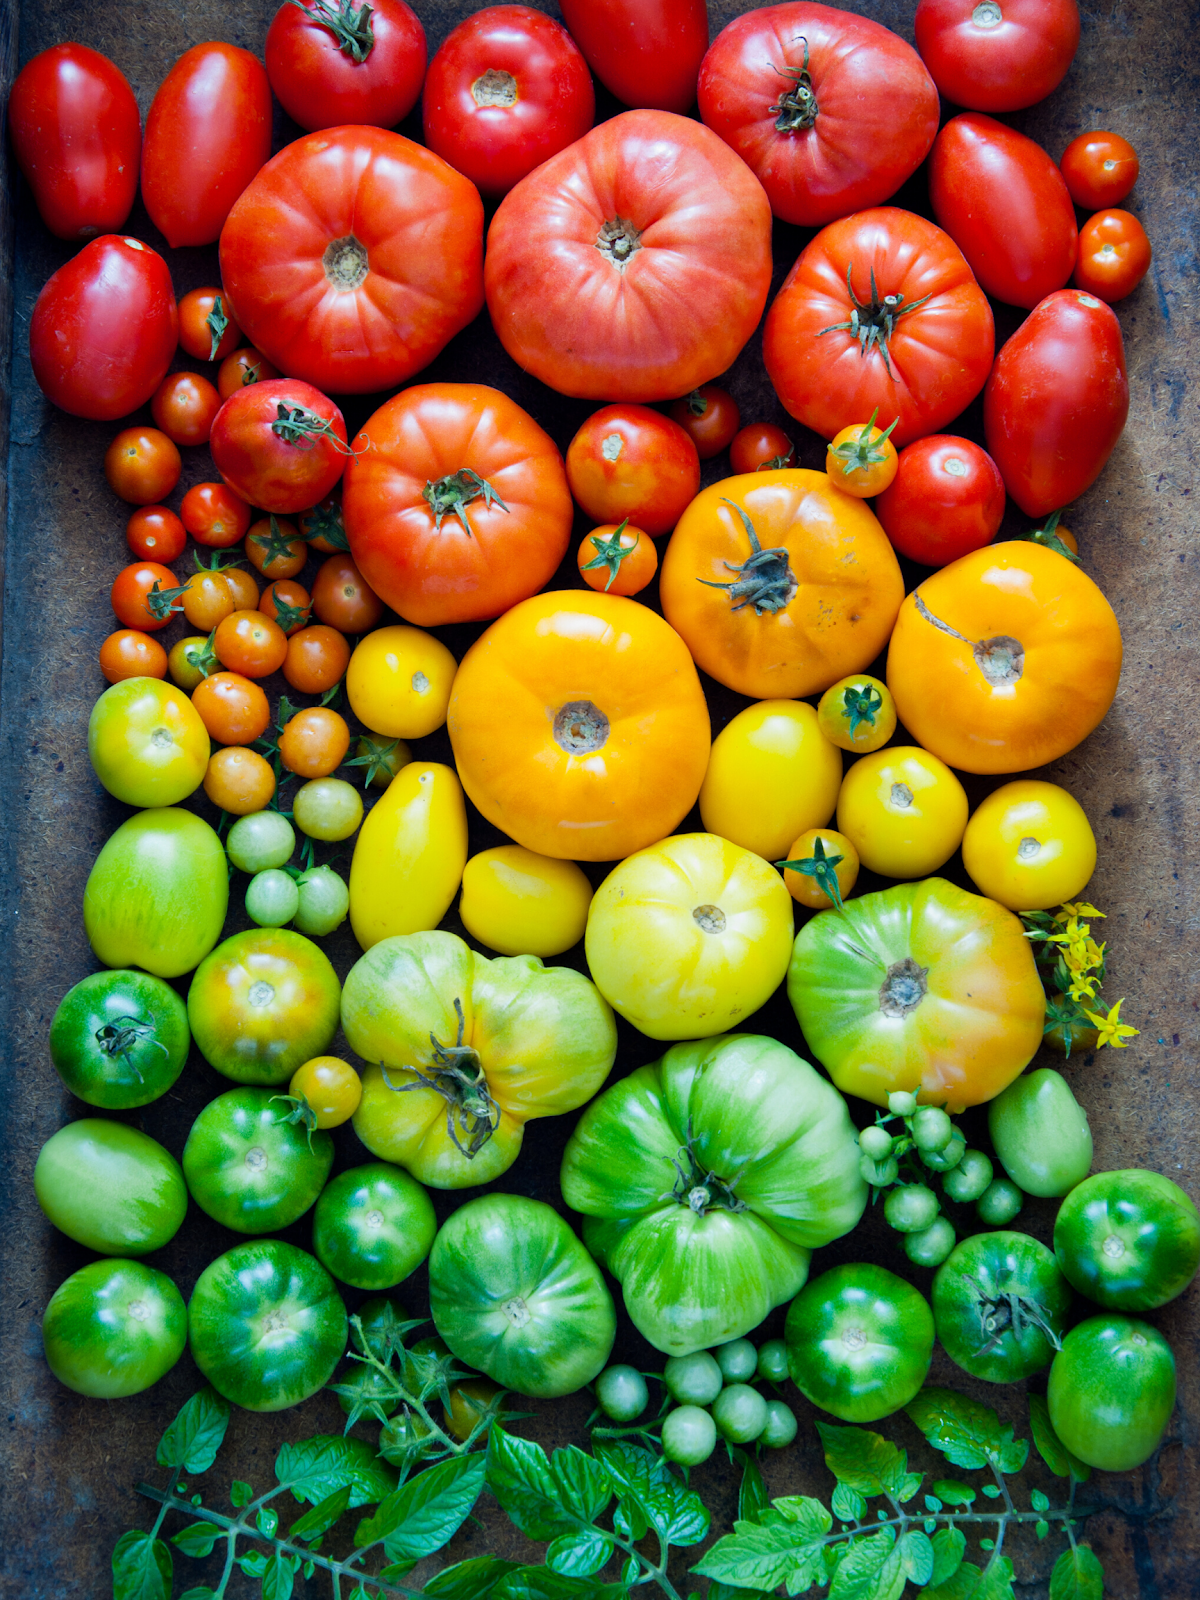 Tomates colorées